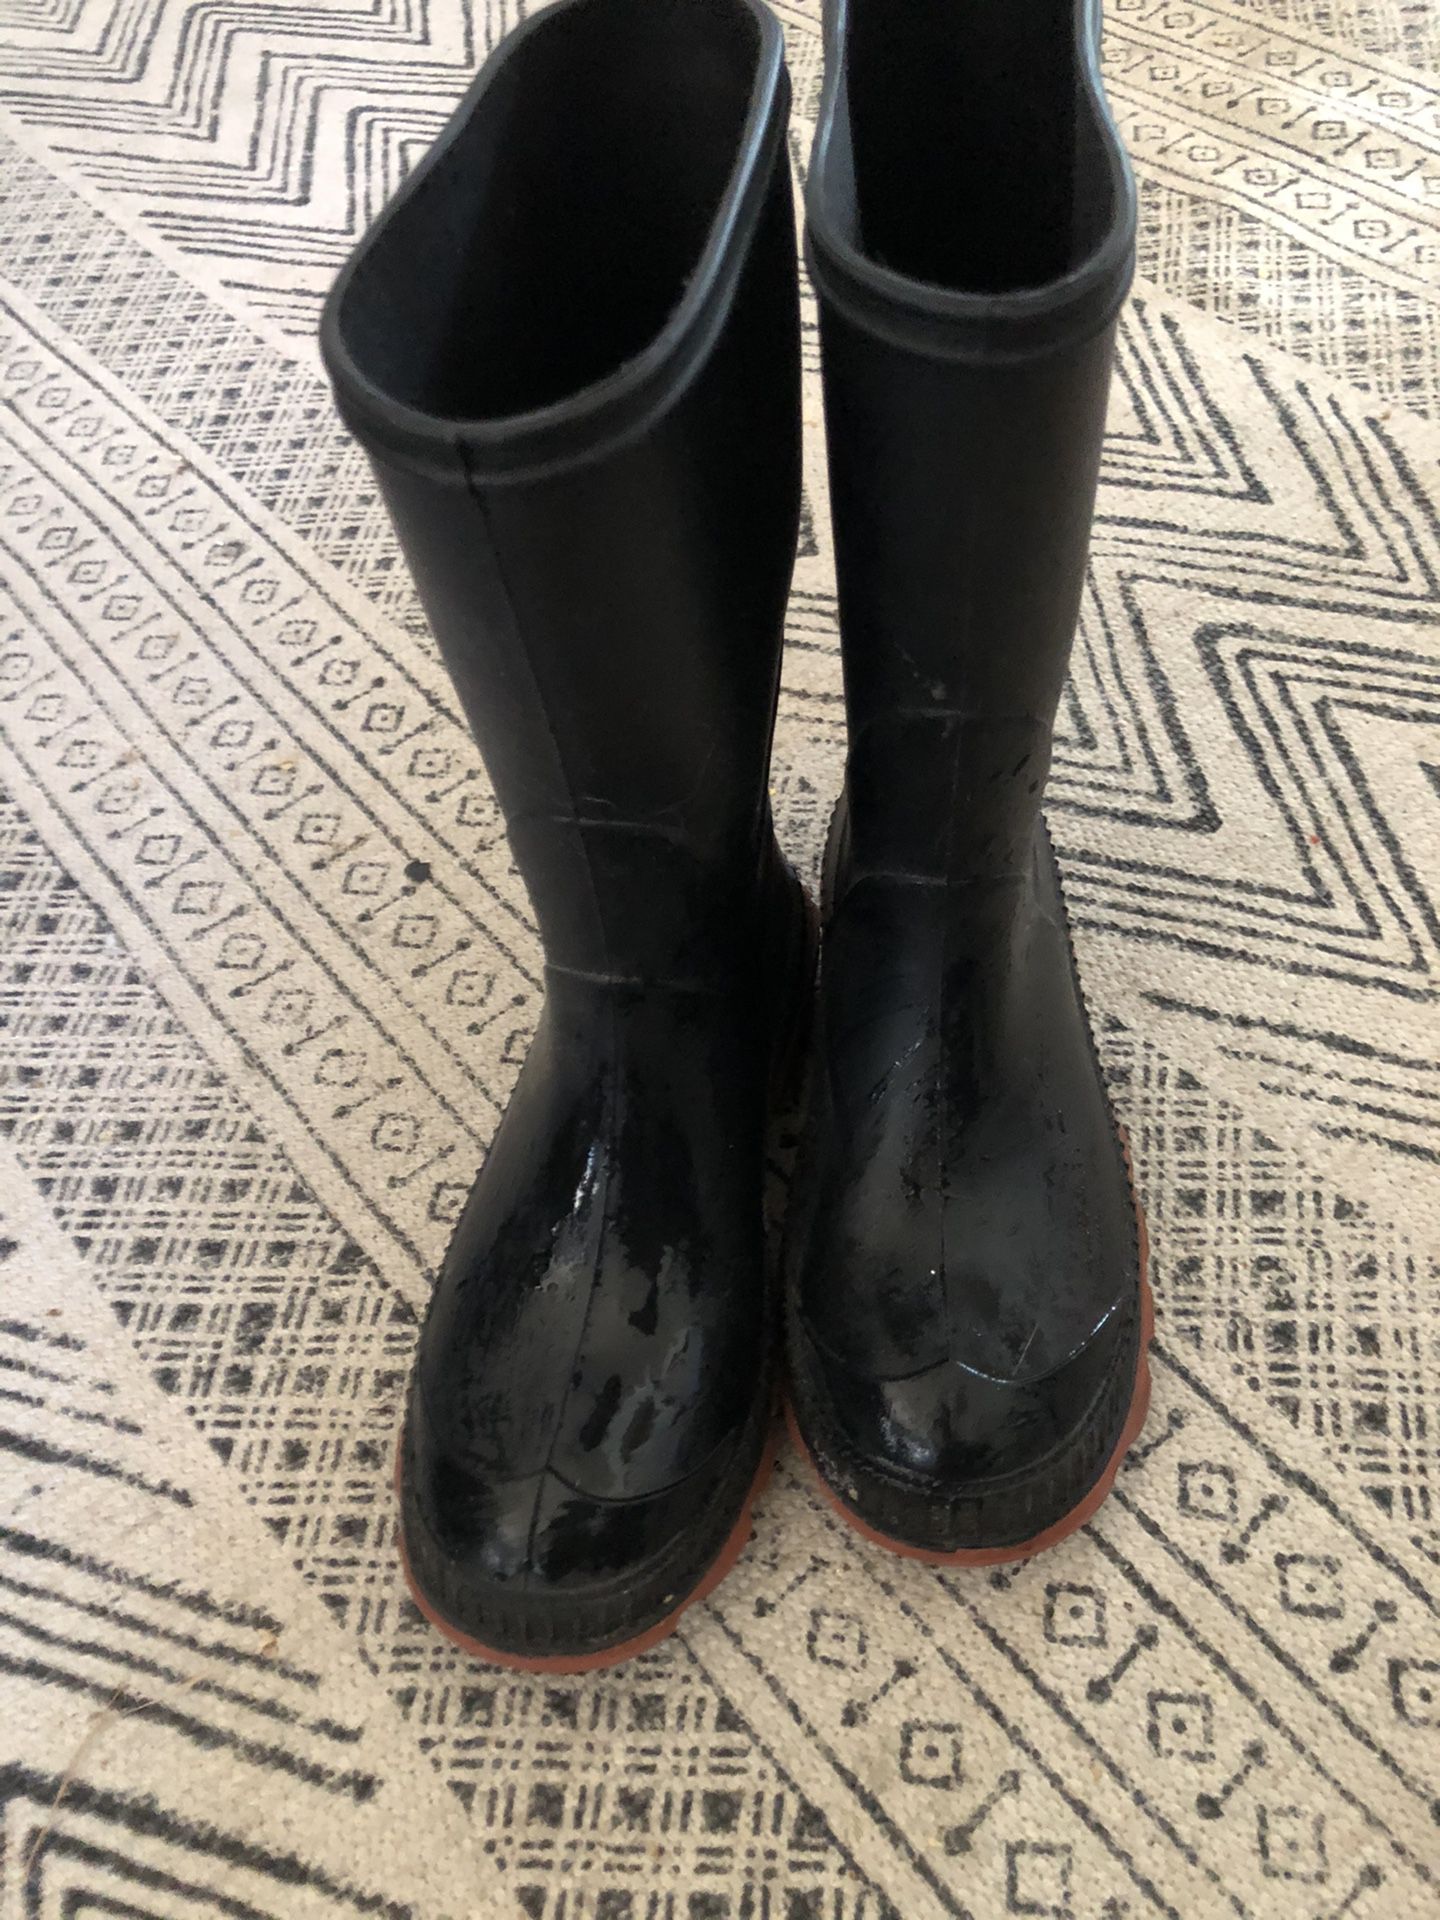 Size 13 rain boots